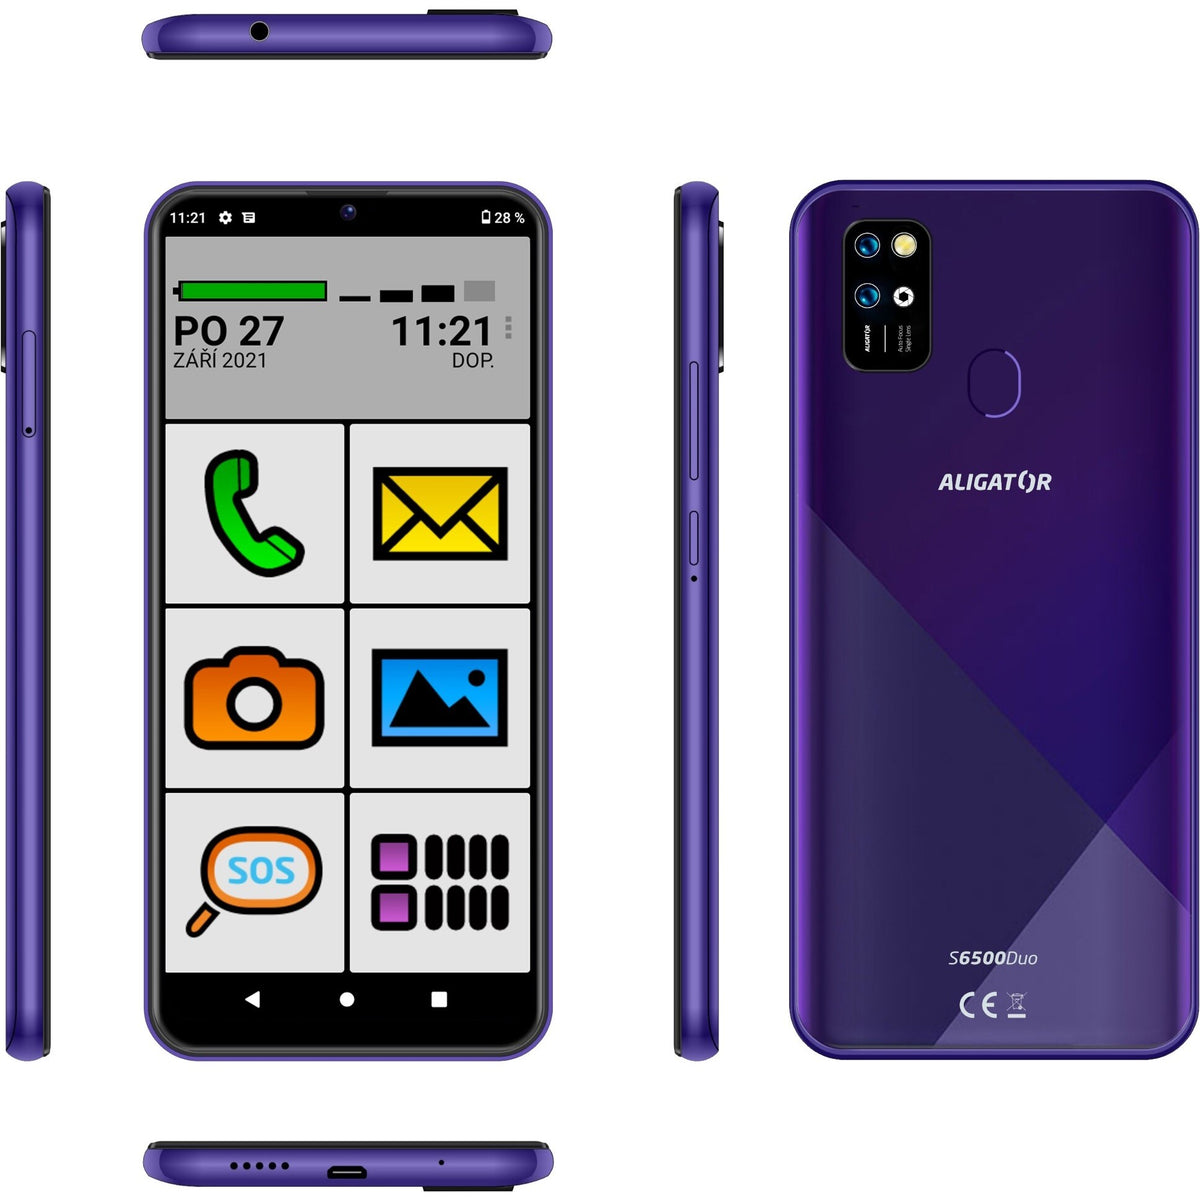 Mobilní telefon Aligator 6500 Duo 2GB/32GB SENIOR, fialová POUŽIT